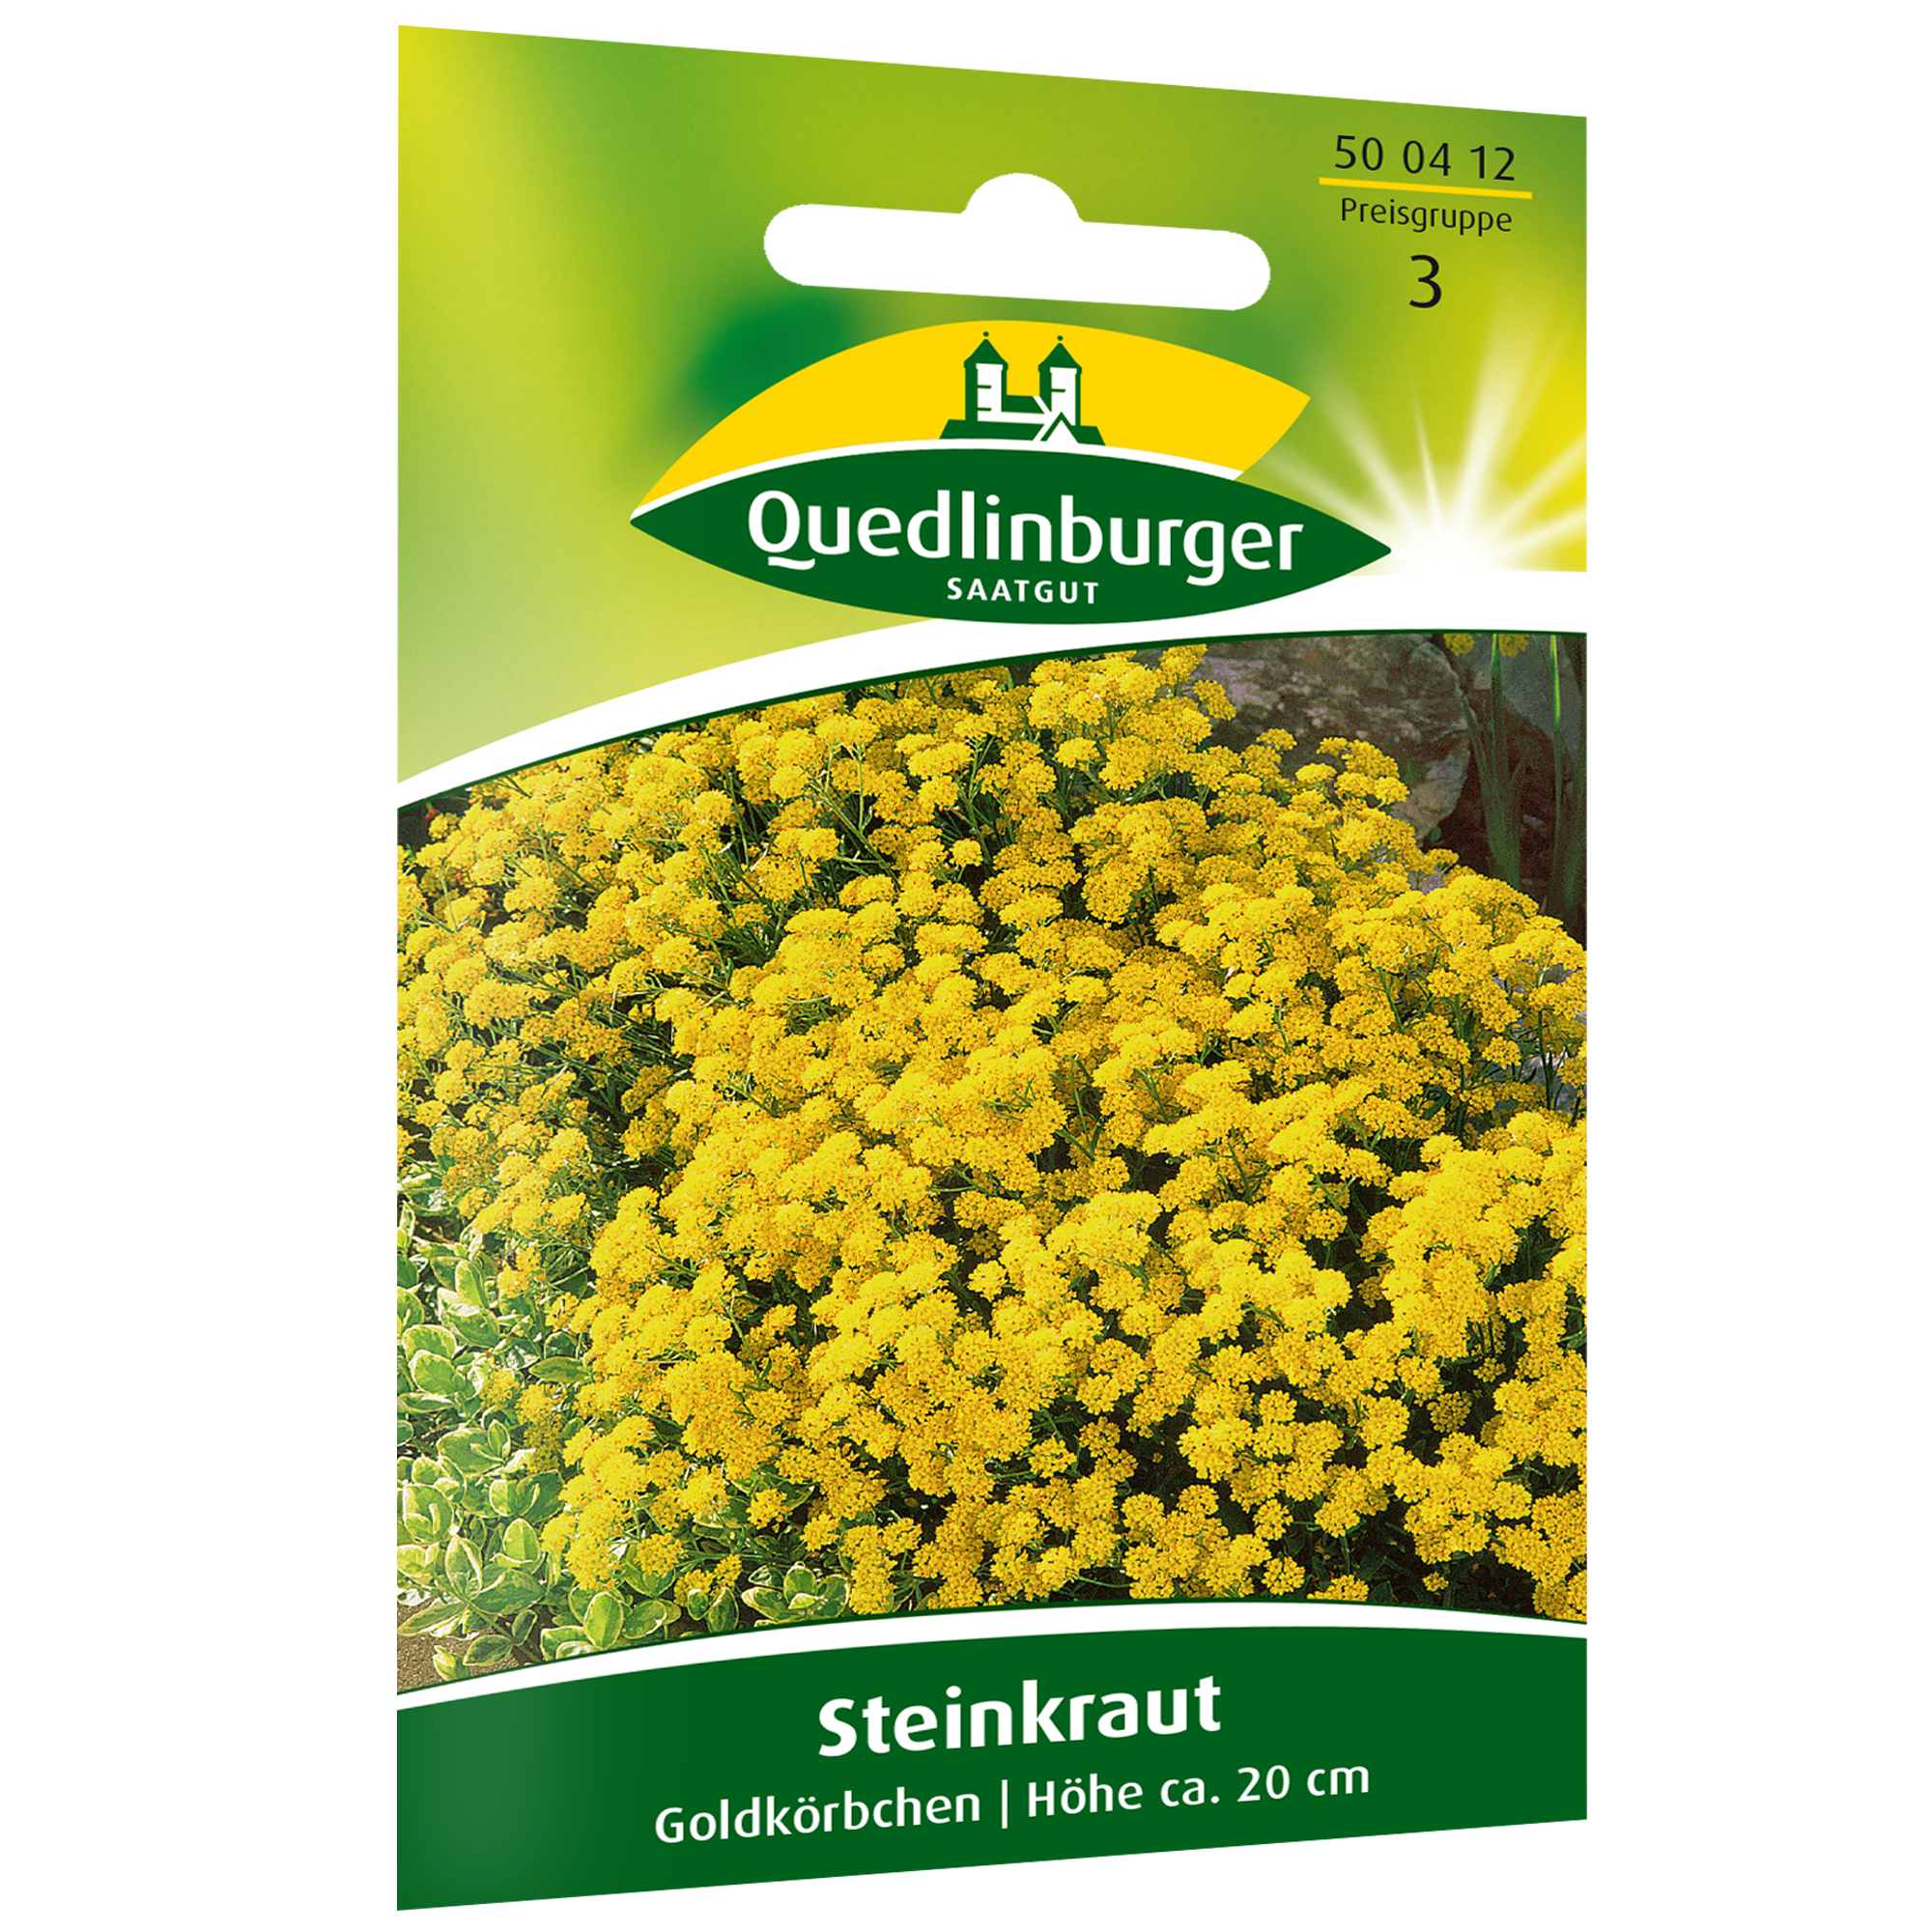 Steinkraut 'Goldkörbchen' + product picture